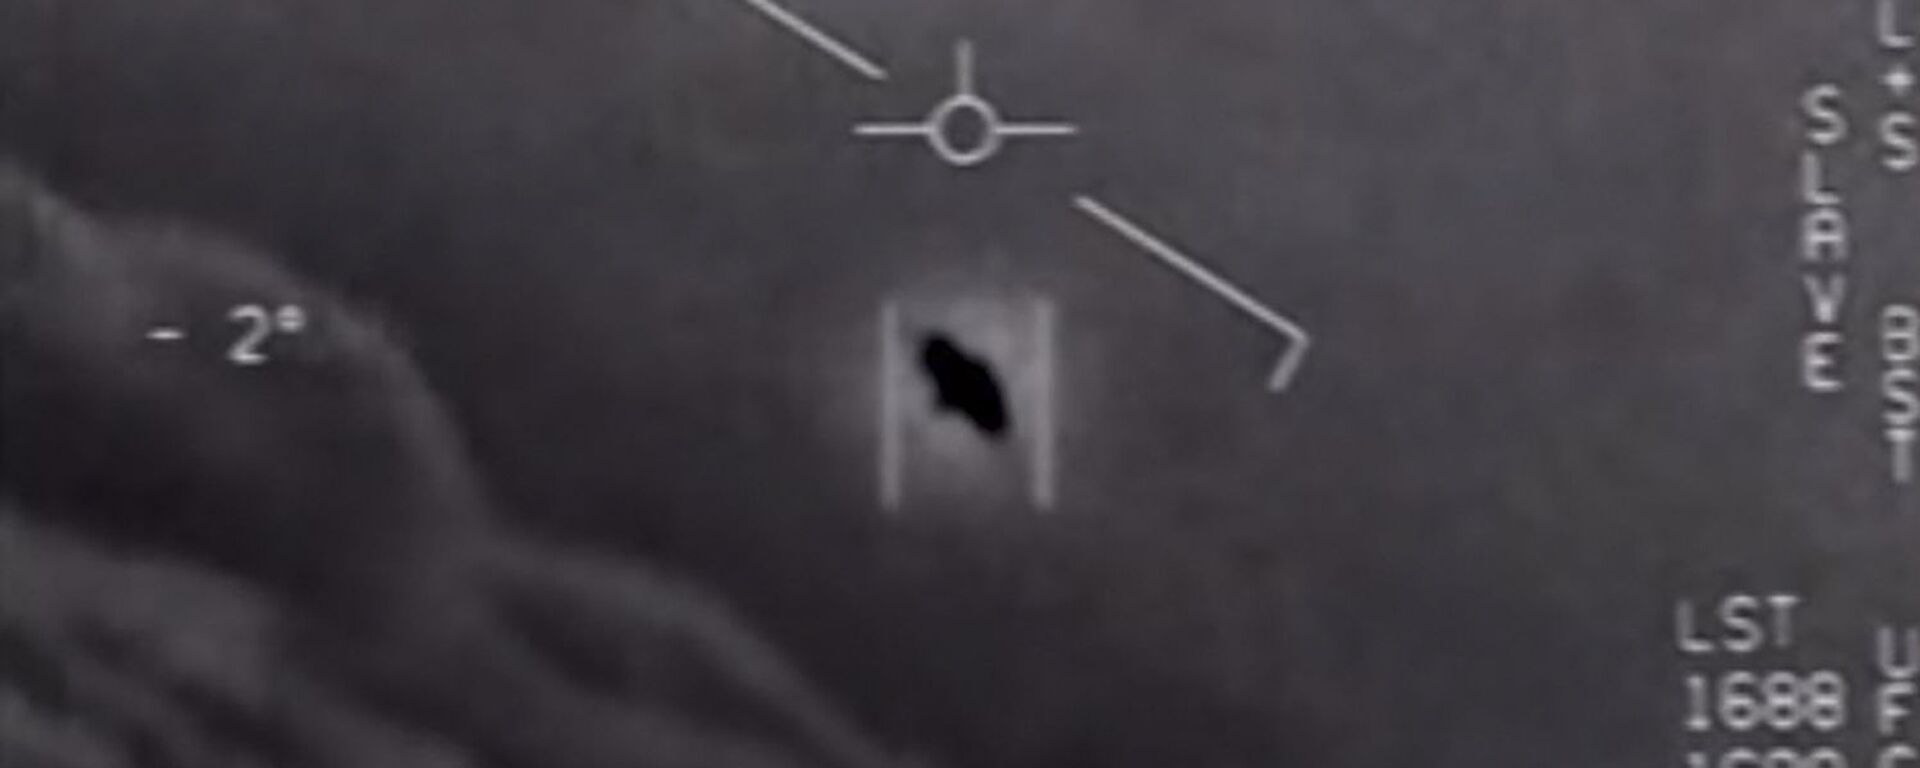 Pentagon'un UFO raporunda yer alan ABD donanma pilotlarının 26 Nisan 2020'de çektikleri video - Sputnik Türkiye, 1920, 29.06.2021